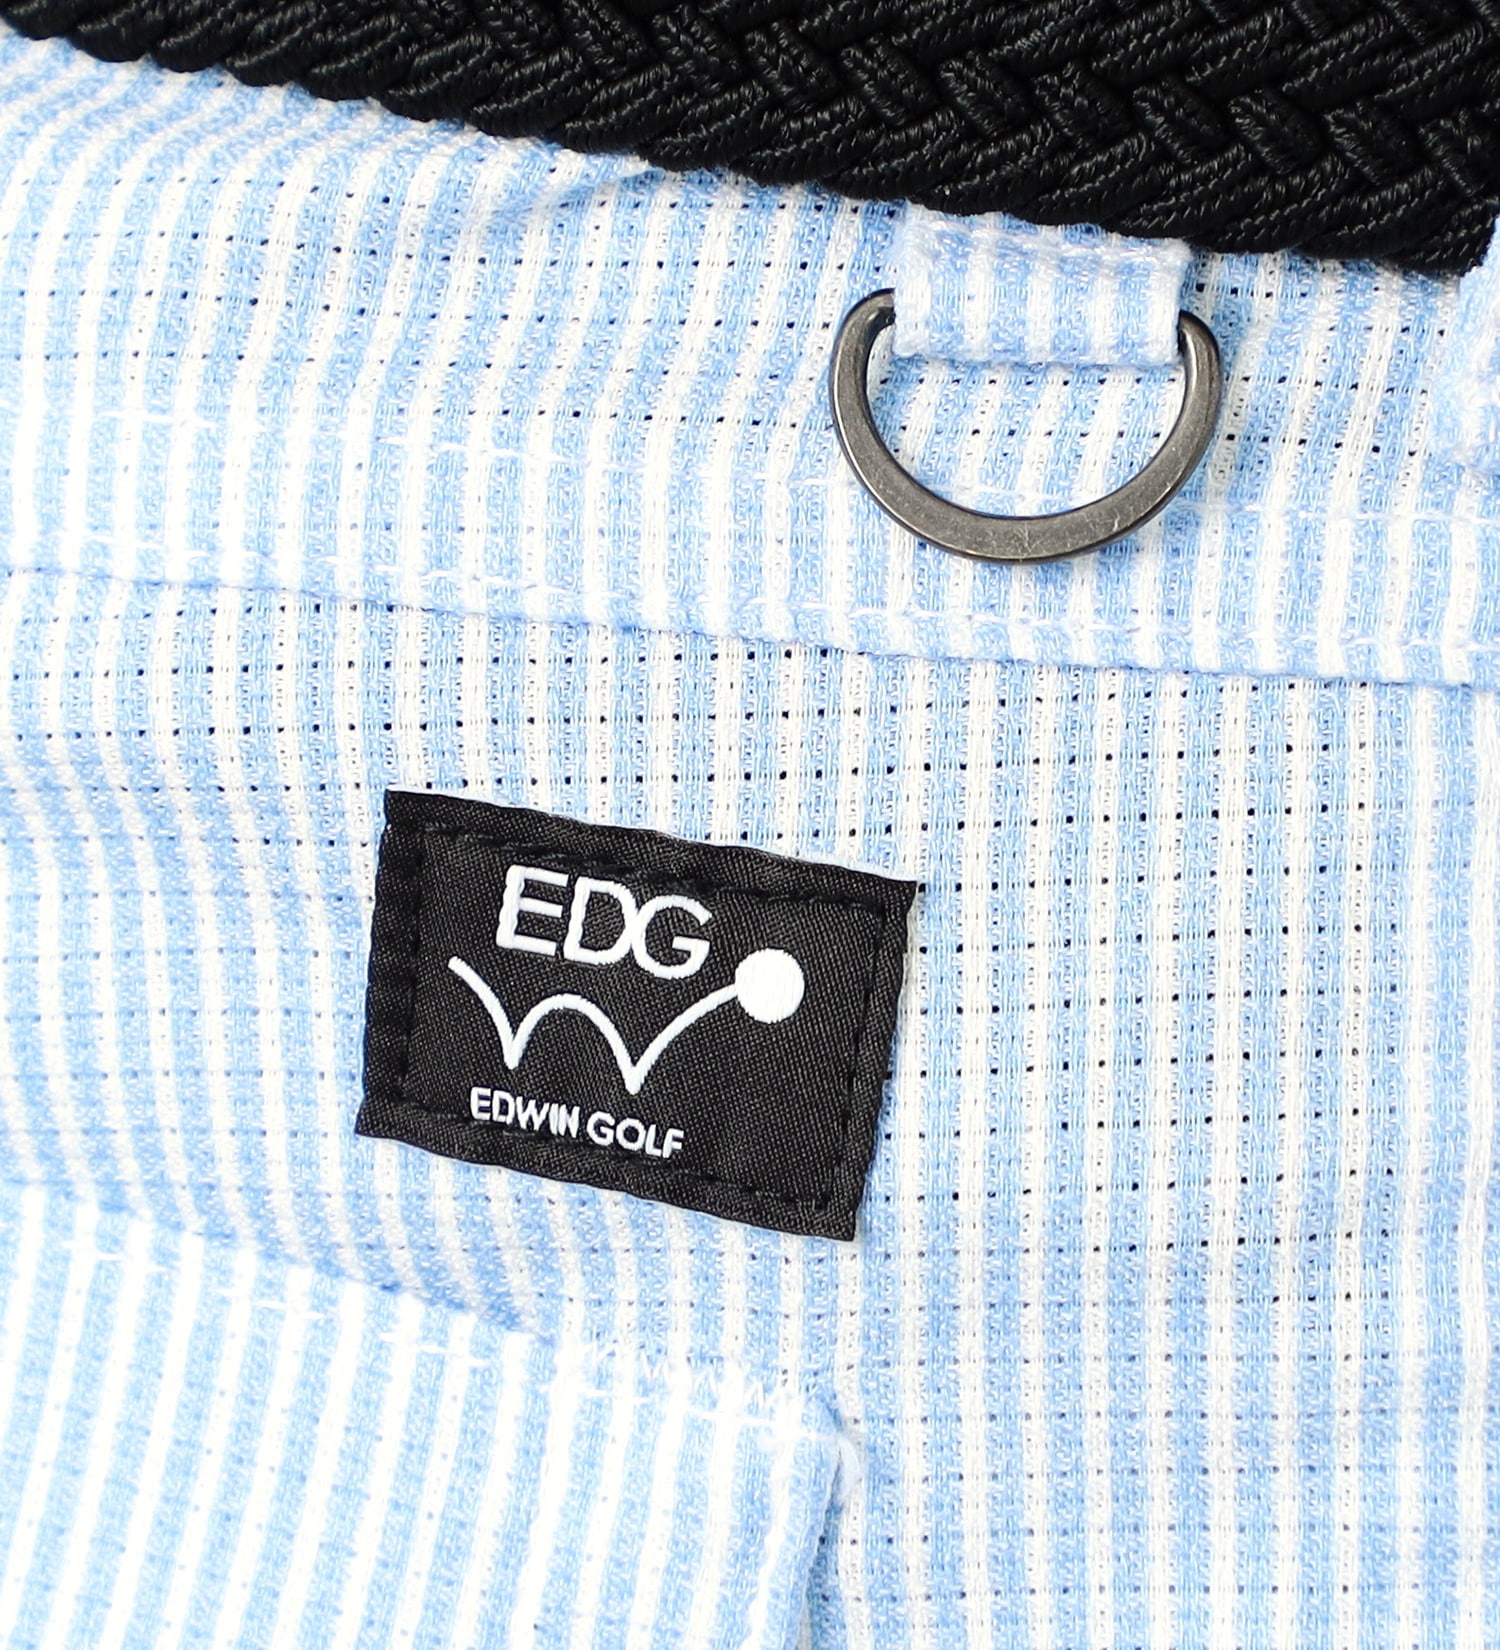 EDWIN(エドウイン)の【サマーセール】EDWIN GOLF エドウイン ゴルフ ショートパンツ|パンツ/パンツ/メンズ|ストライプ